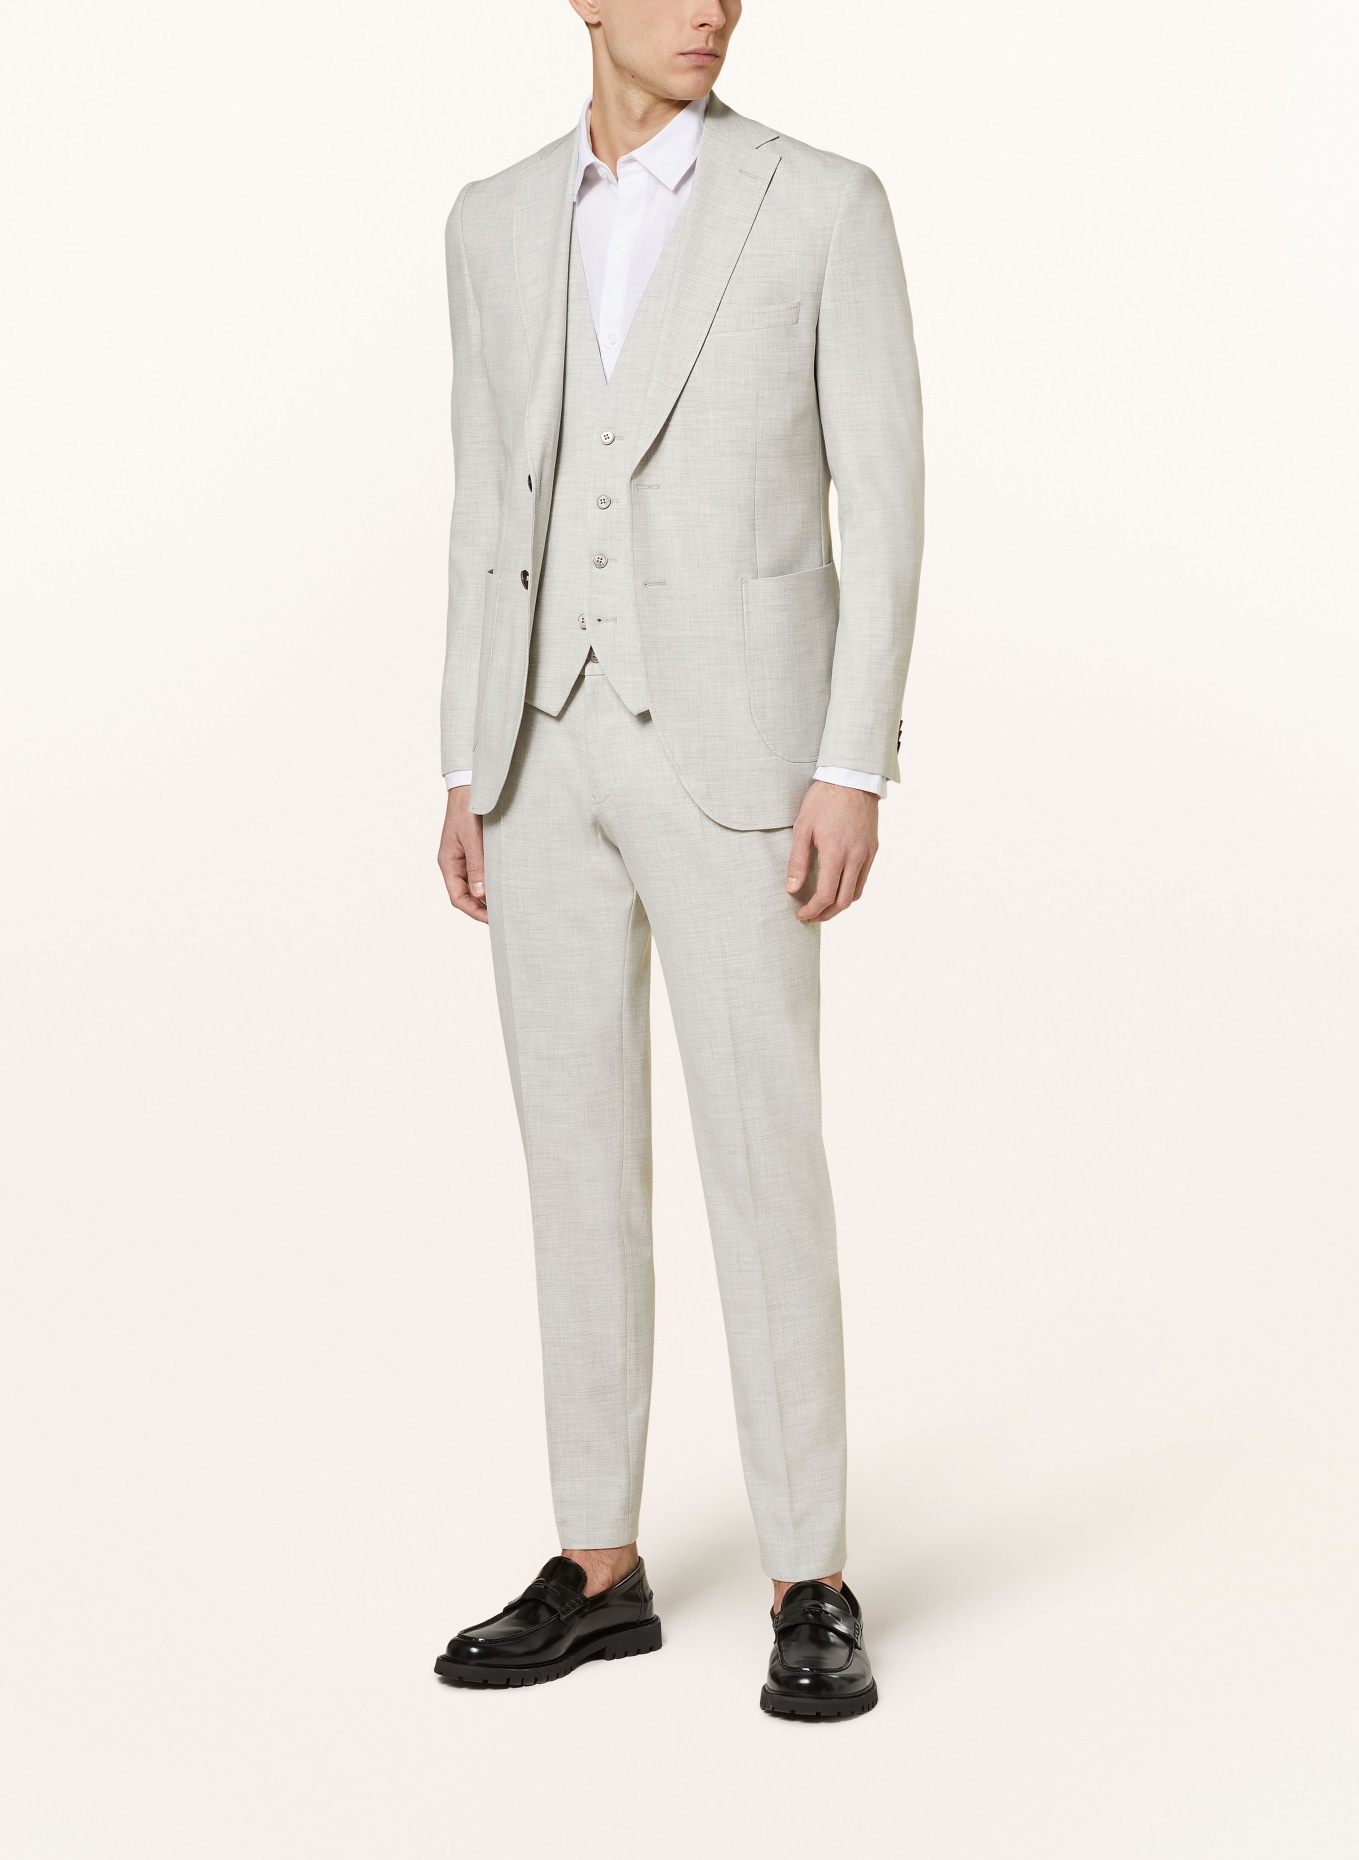 PAUL Suit vest extra slim fit, Color: LIGHT GRAY (Image 2)